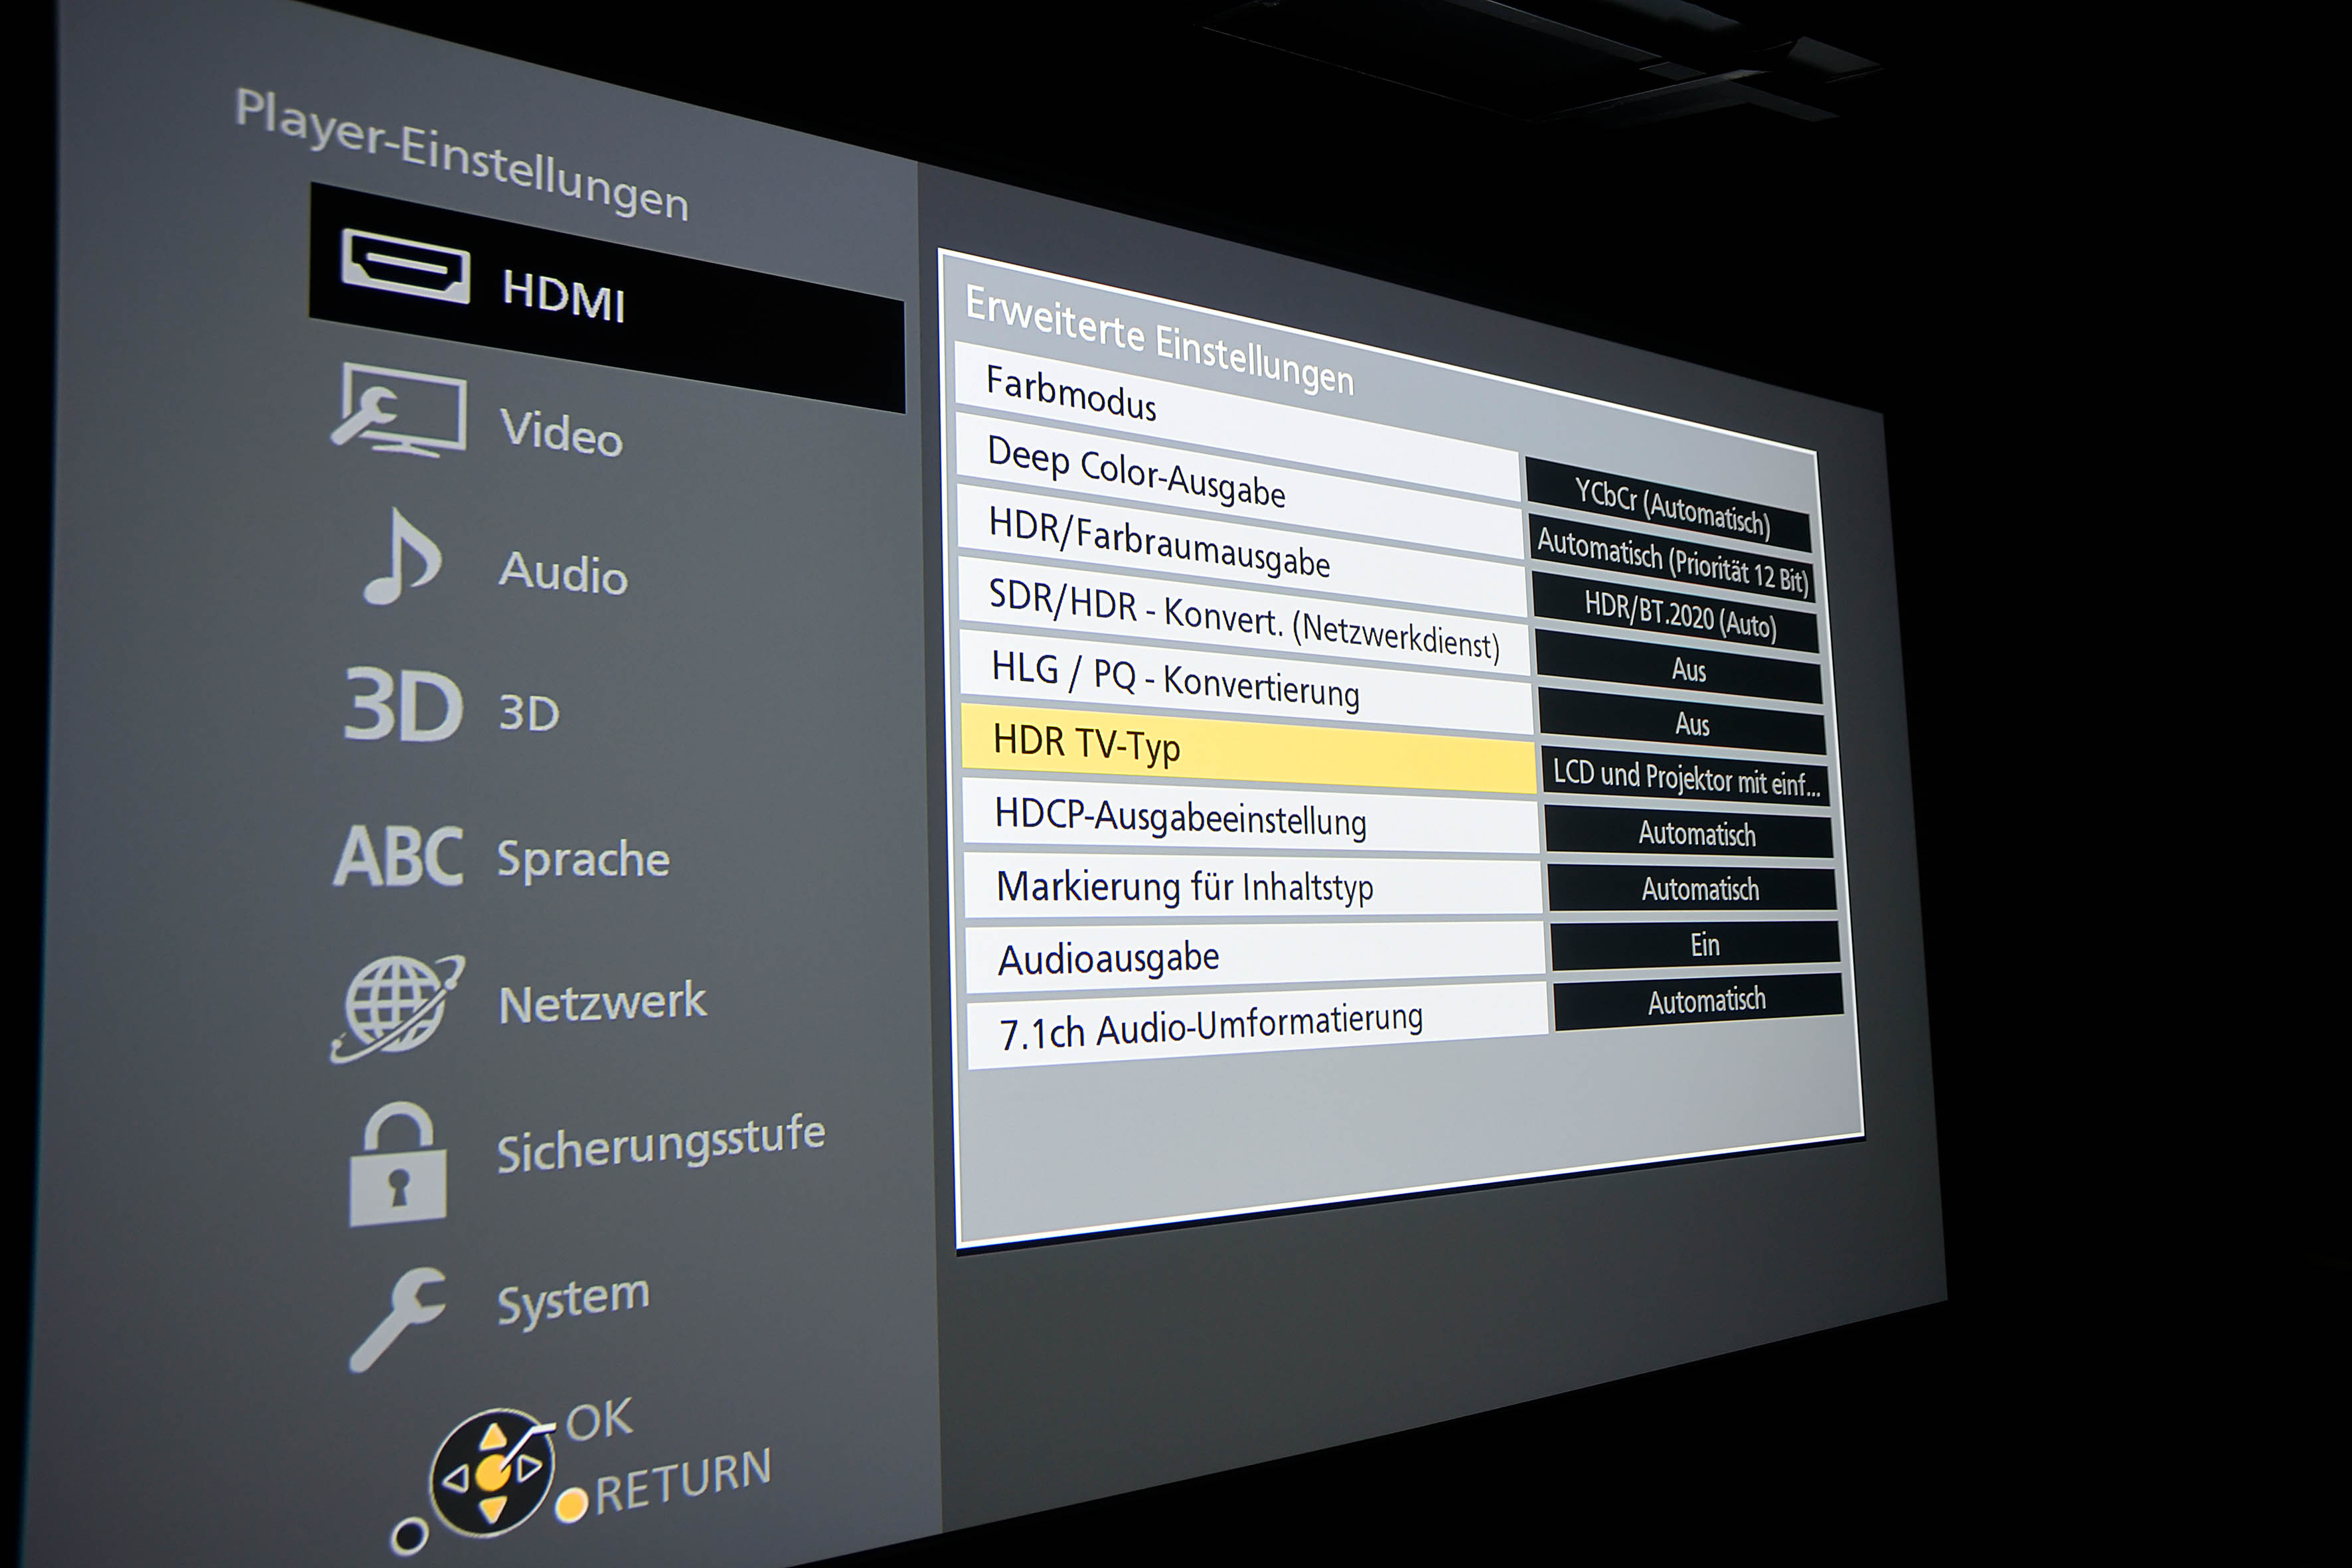 Unter Player-Einstellungen wird im Menü „HDMI“ der „HDR TV-Typ“ auf „LCD und Projektor mit einfacher Helligkeit“ gestellt. Damit wird die Clipping-Grenze auf 500 Nits festgeschrieben.